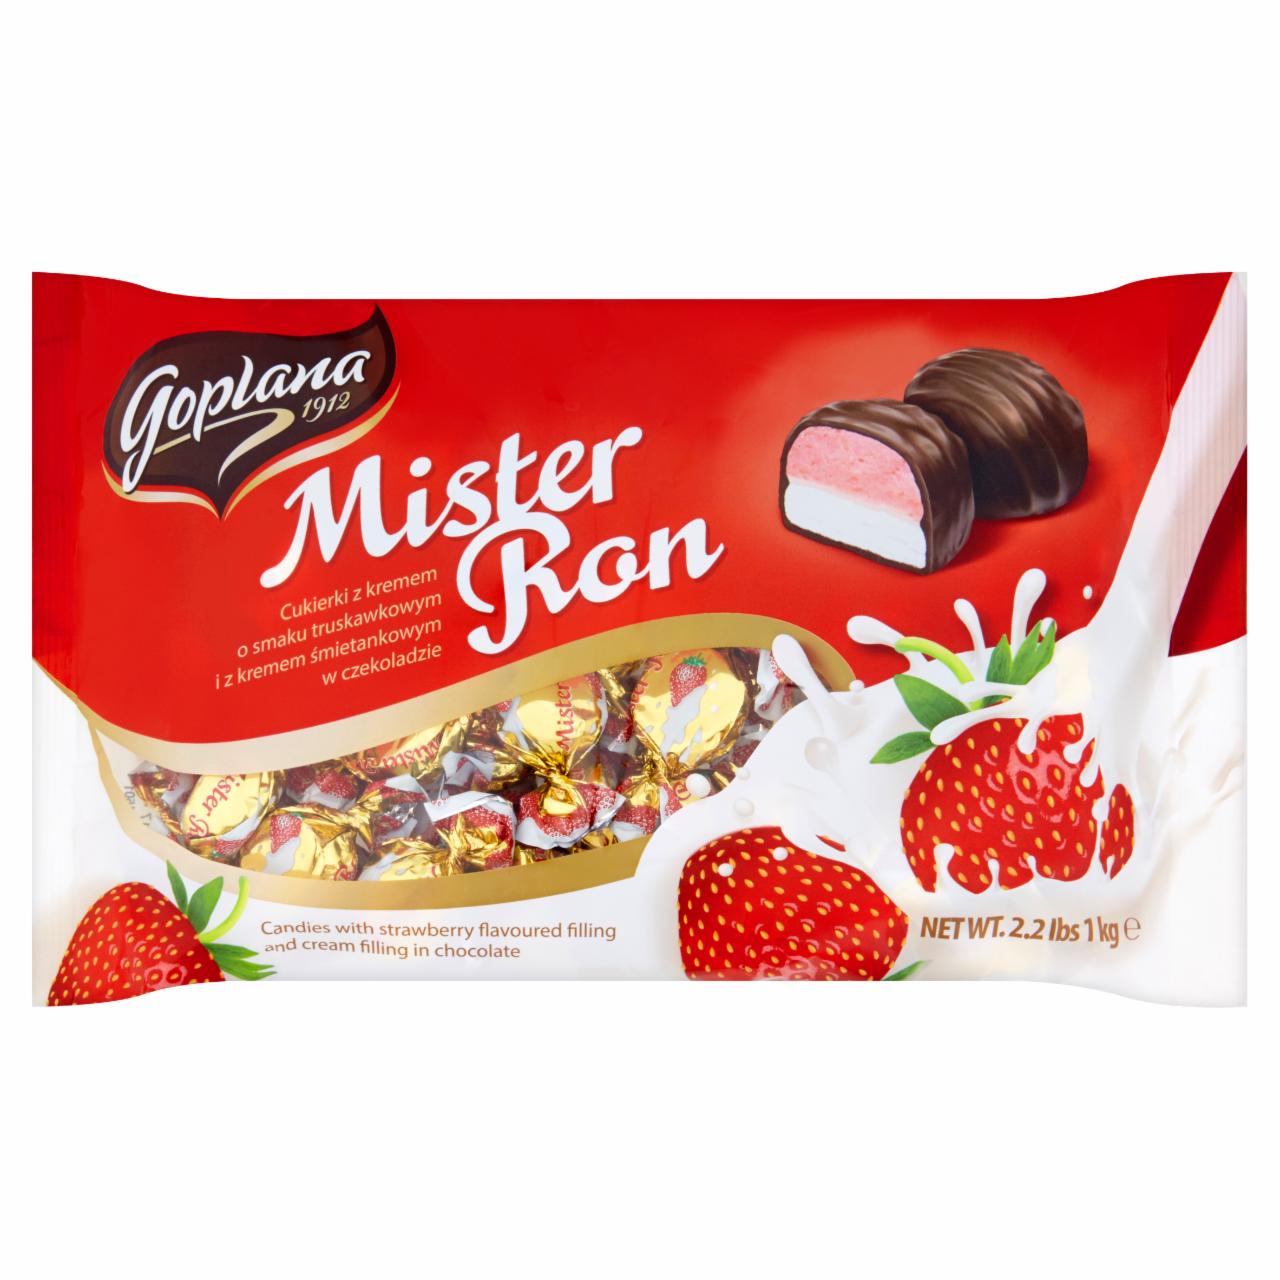 Zdjęcia - Solidarność Mister Ron Krem o smaku truskawkowym i krem śmietankowy w czekoladzie 1 kg